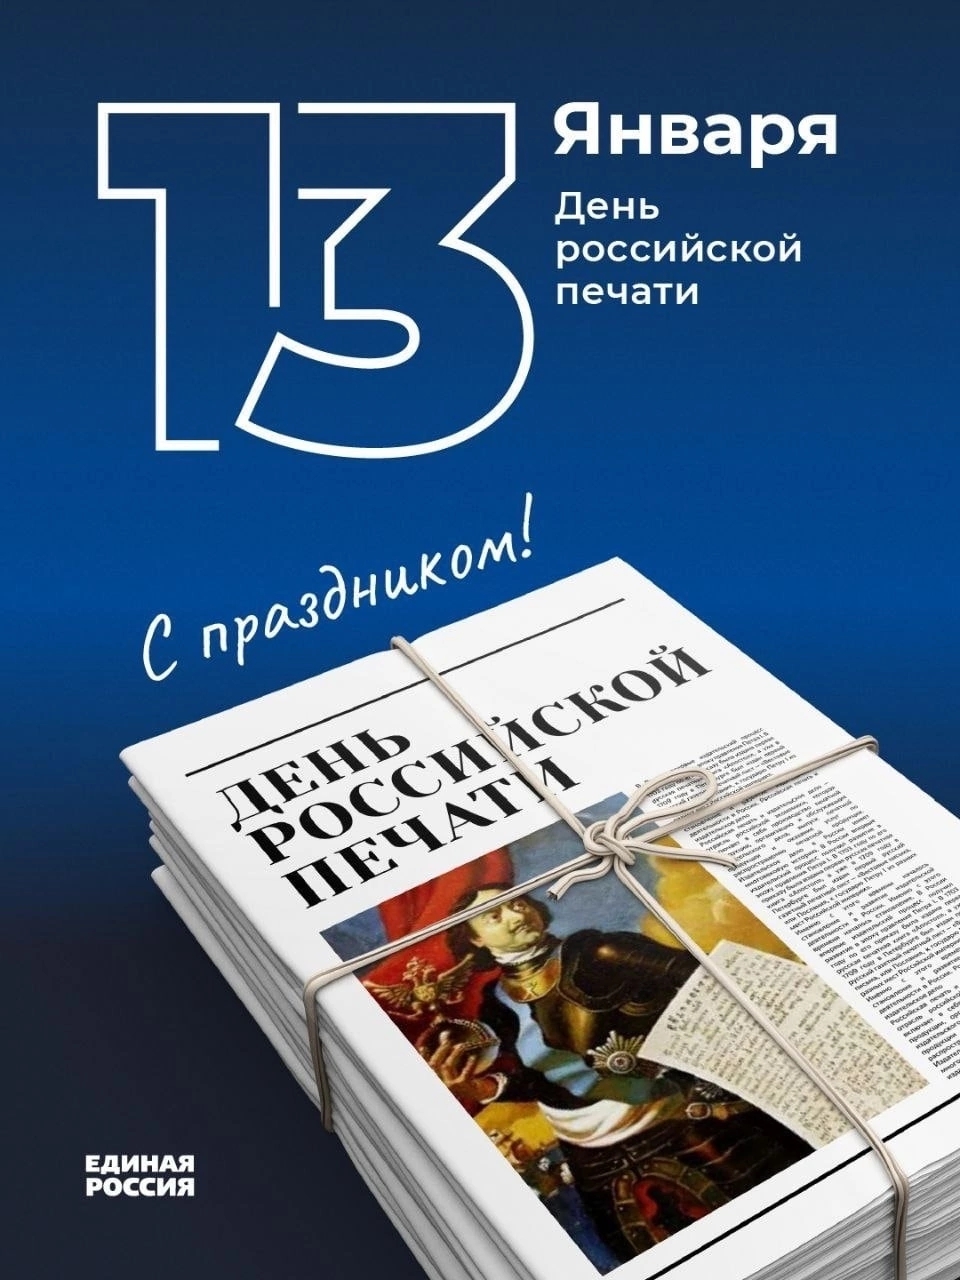 13 января отмечается День российской печати